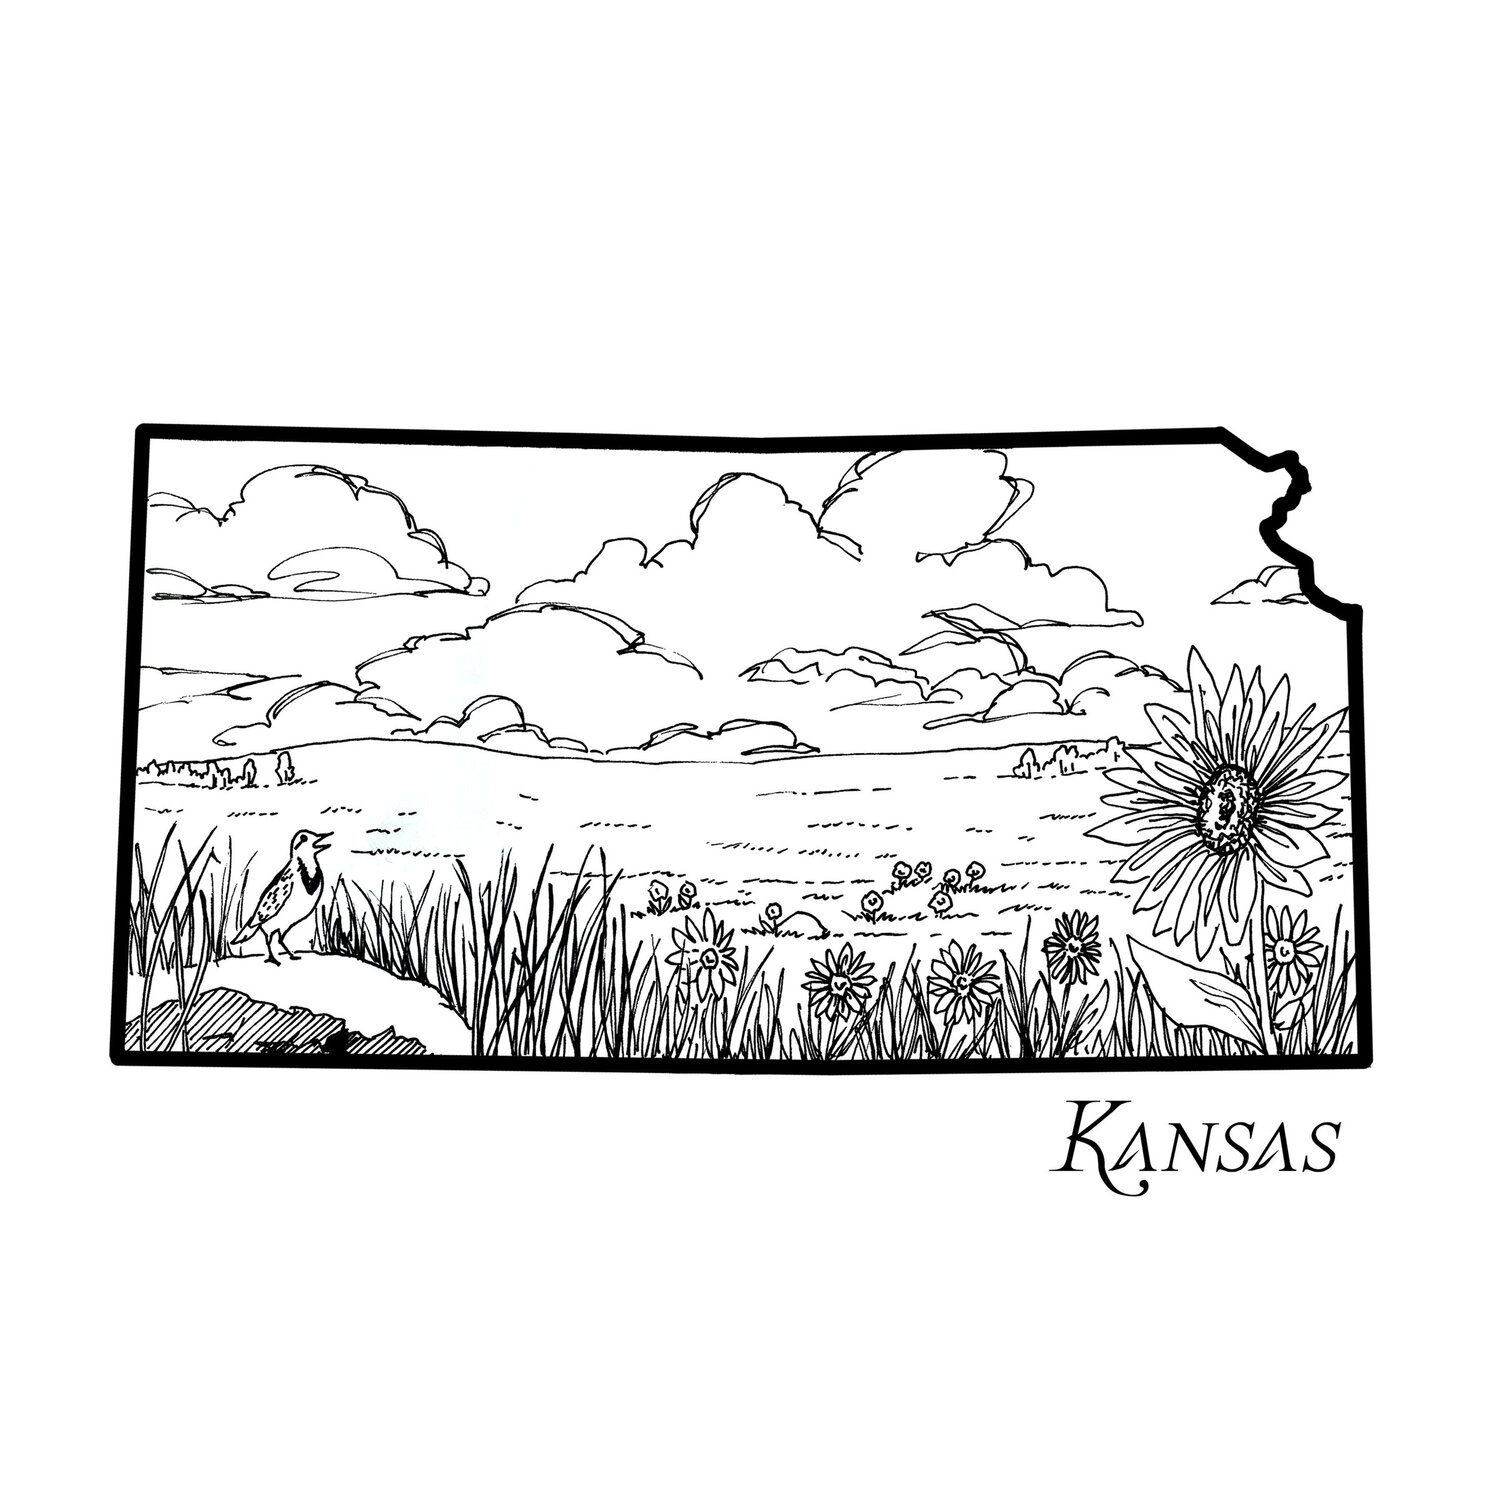 Kansas â corvidae drawings designs